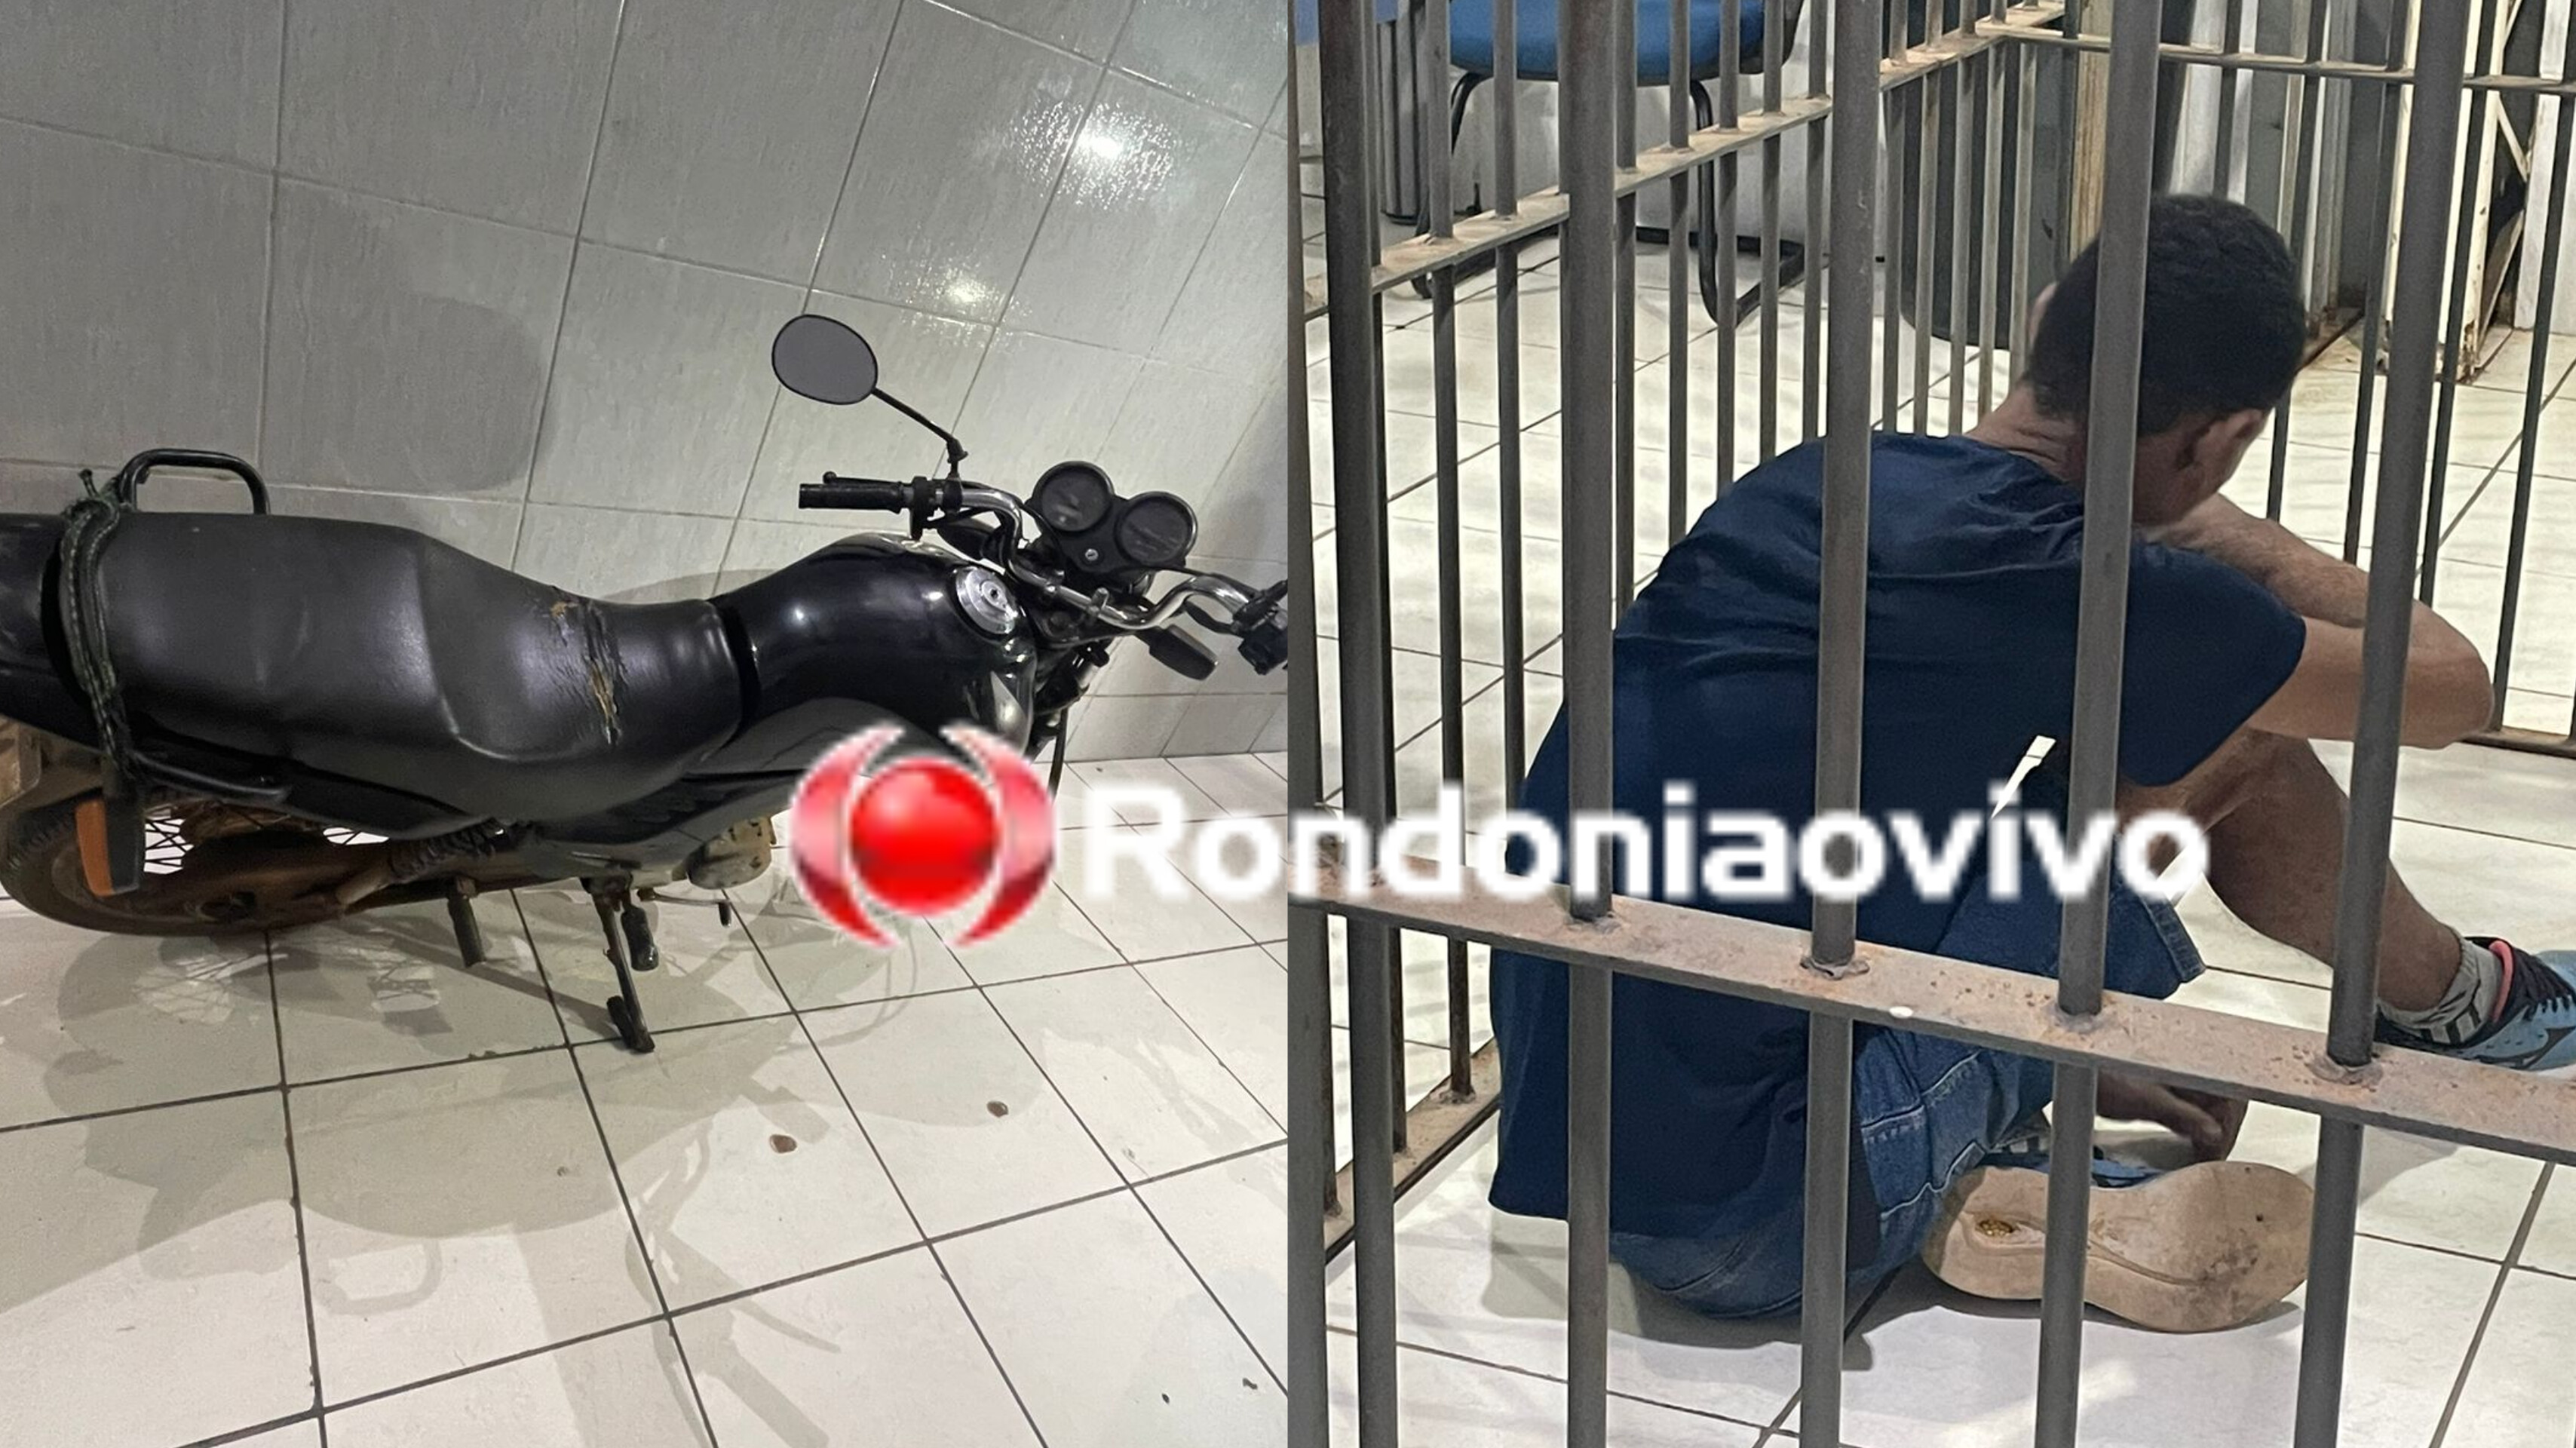 CLONADA: PM persegue dupla e recupera moto roubada comprada pela internet 